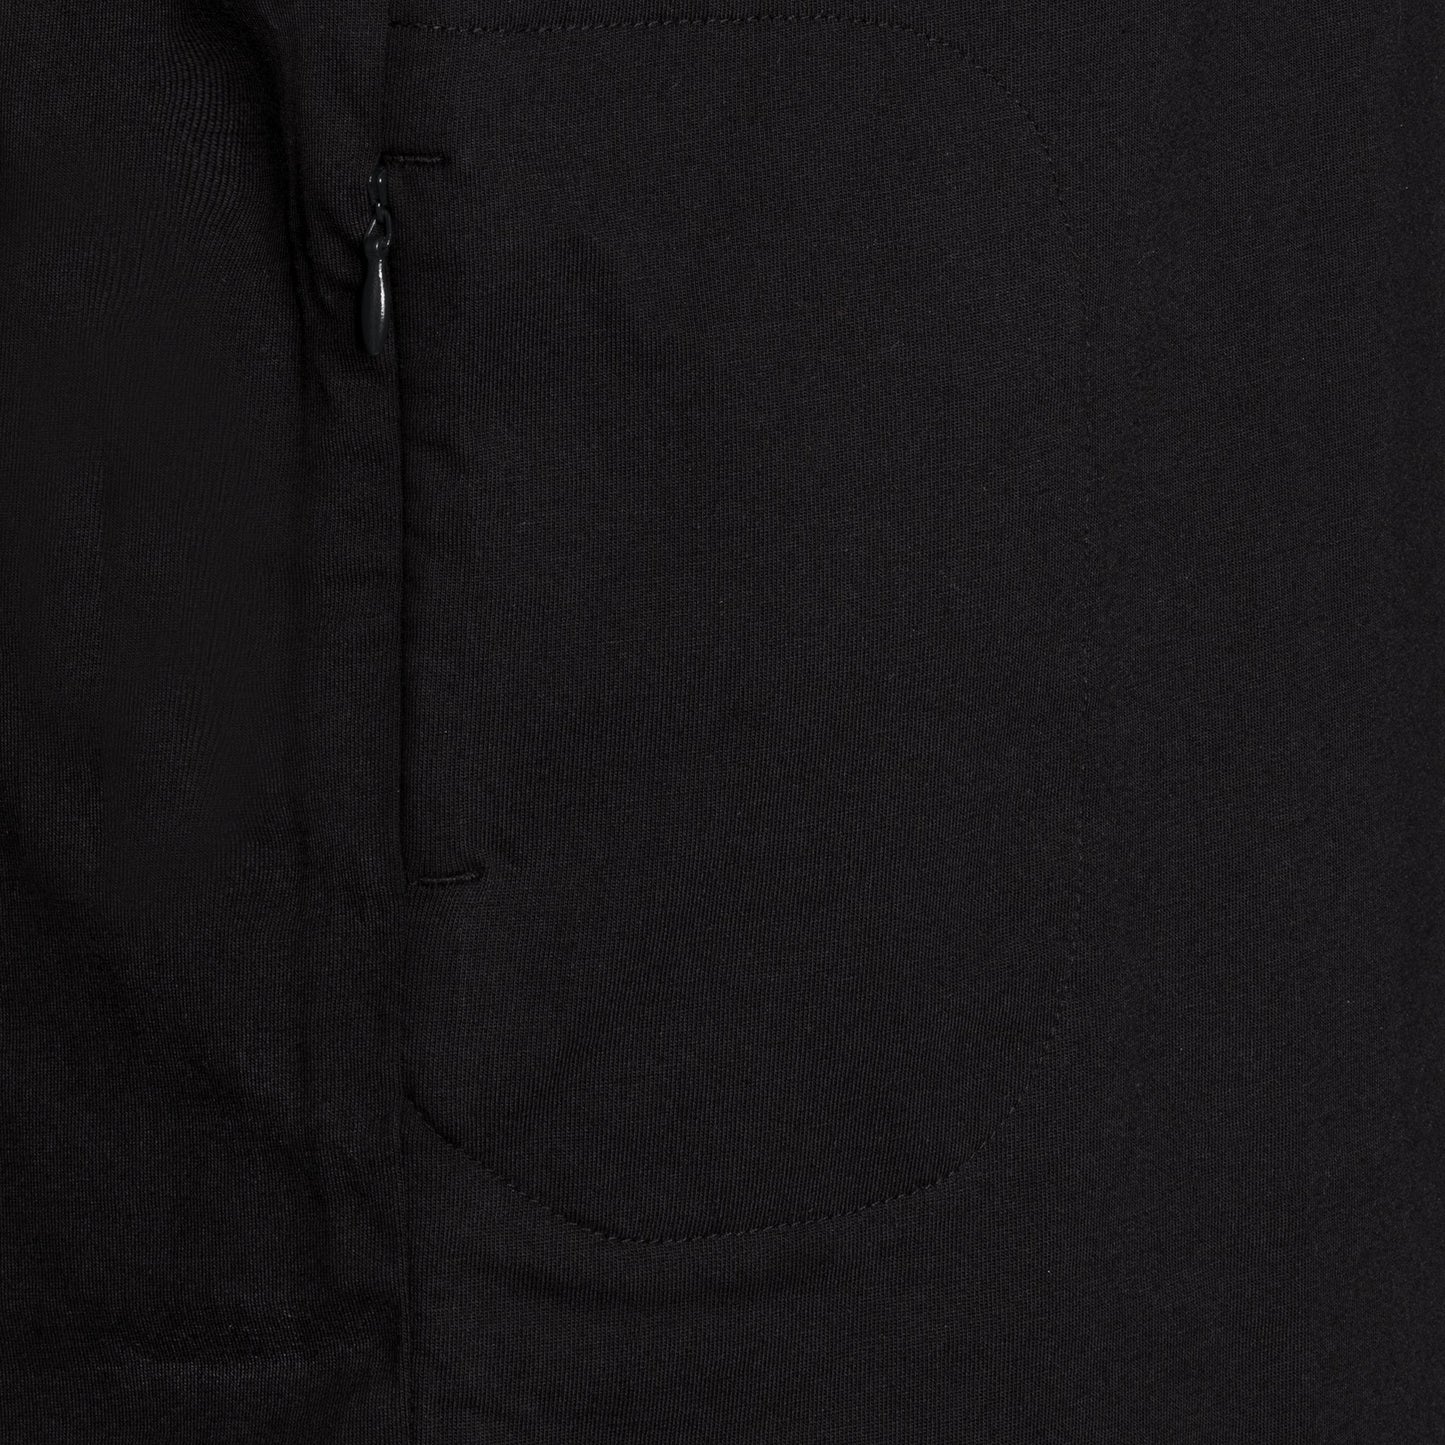 SPYSCAPE Agent Handler T-Shirt with Hidden Zip Pocket - Close up of hidden pocket